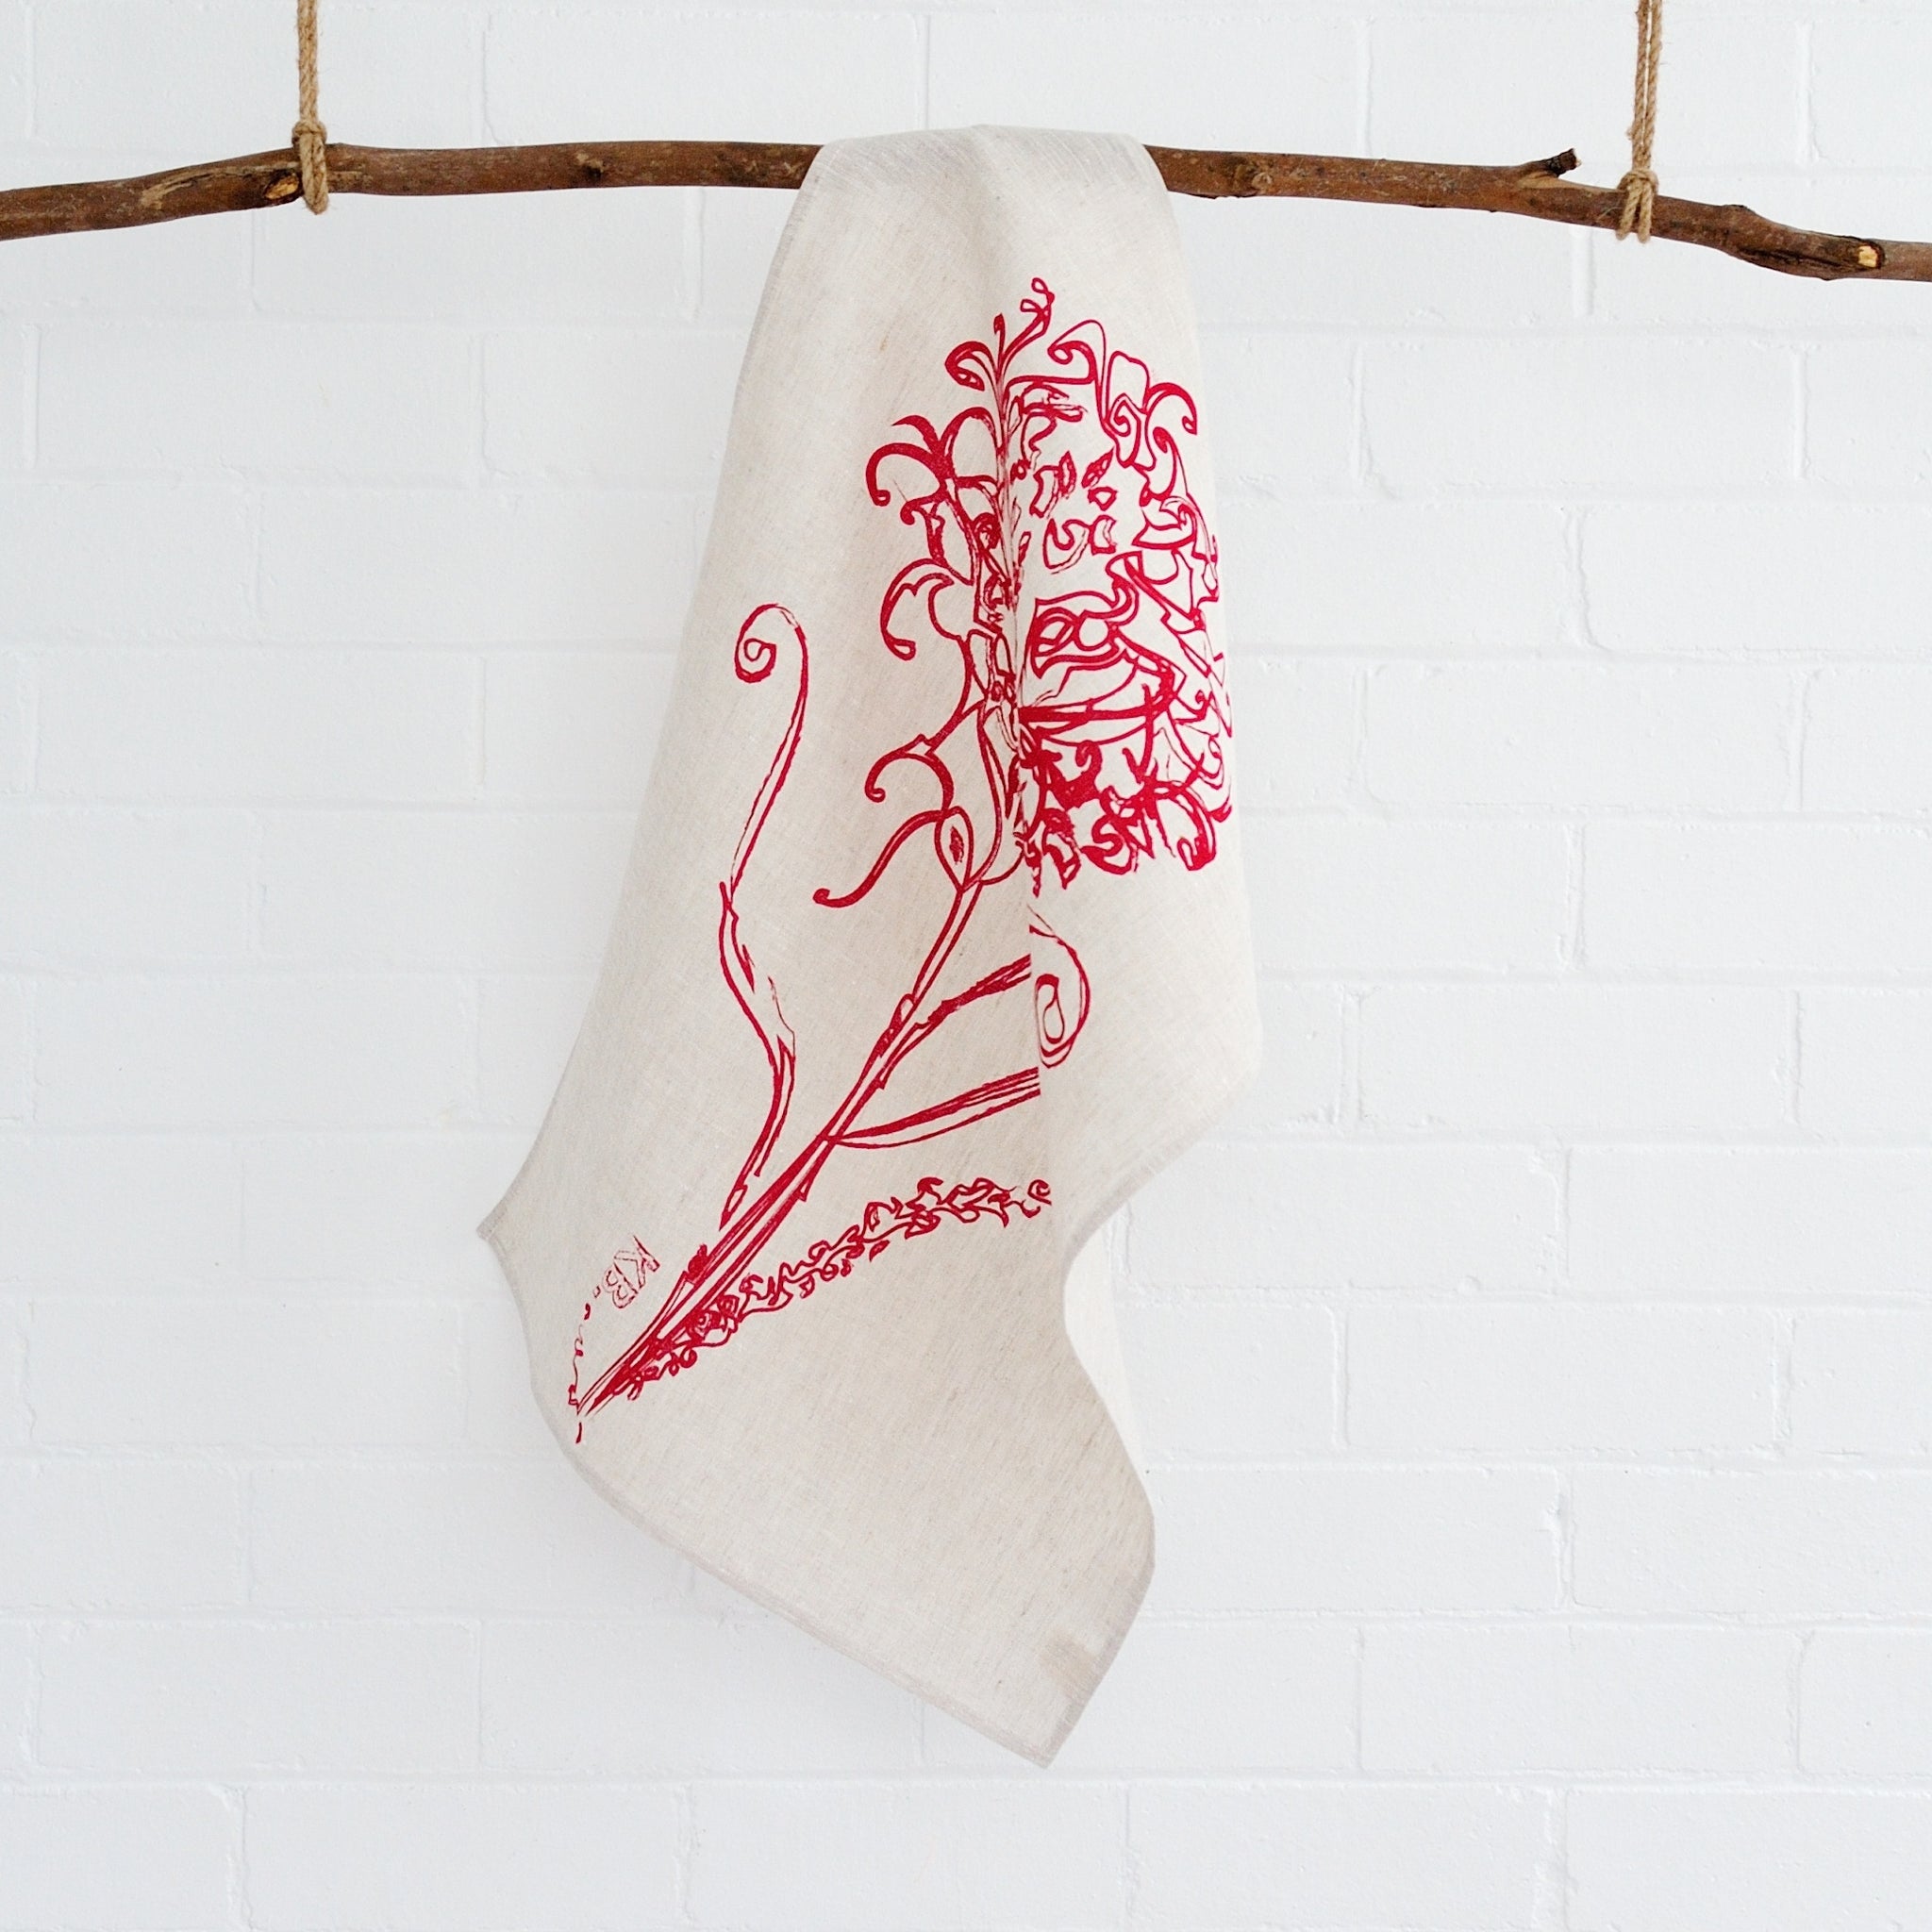 100% linen hand screen printed red waratah tea towel by Krystol Brailey Designs